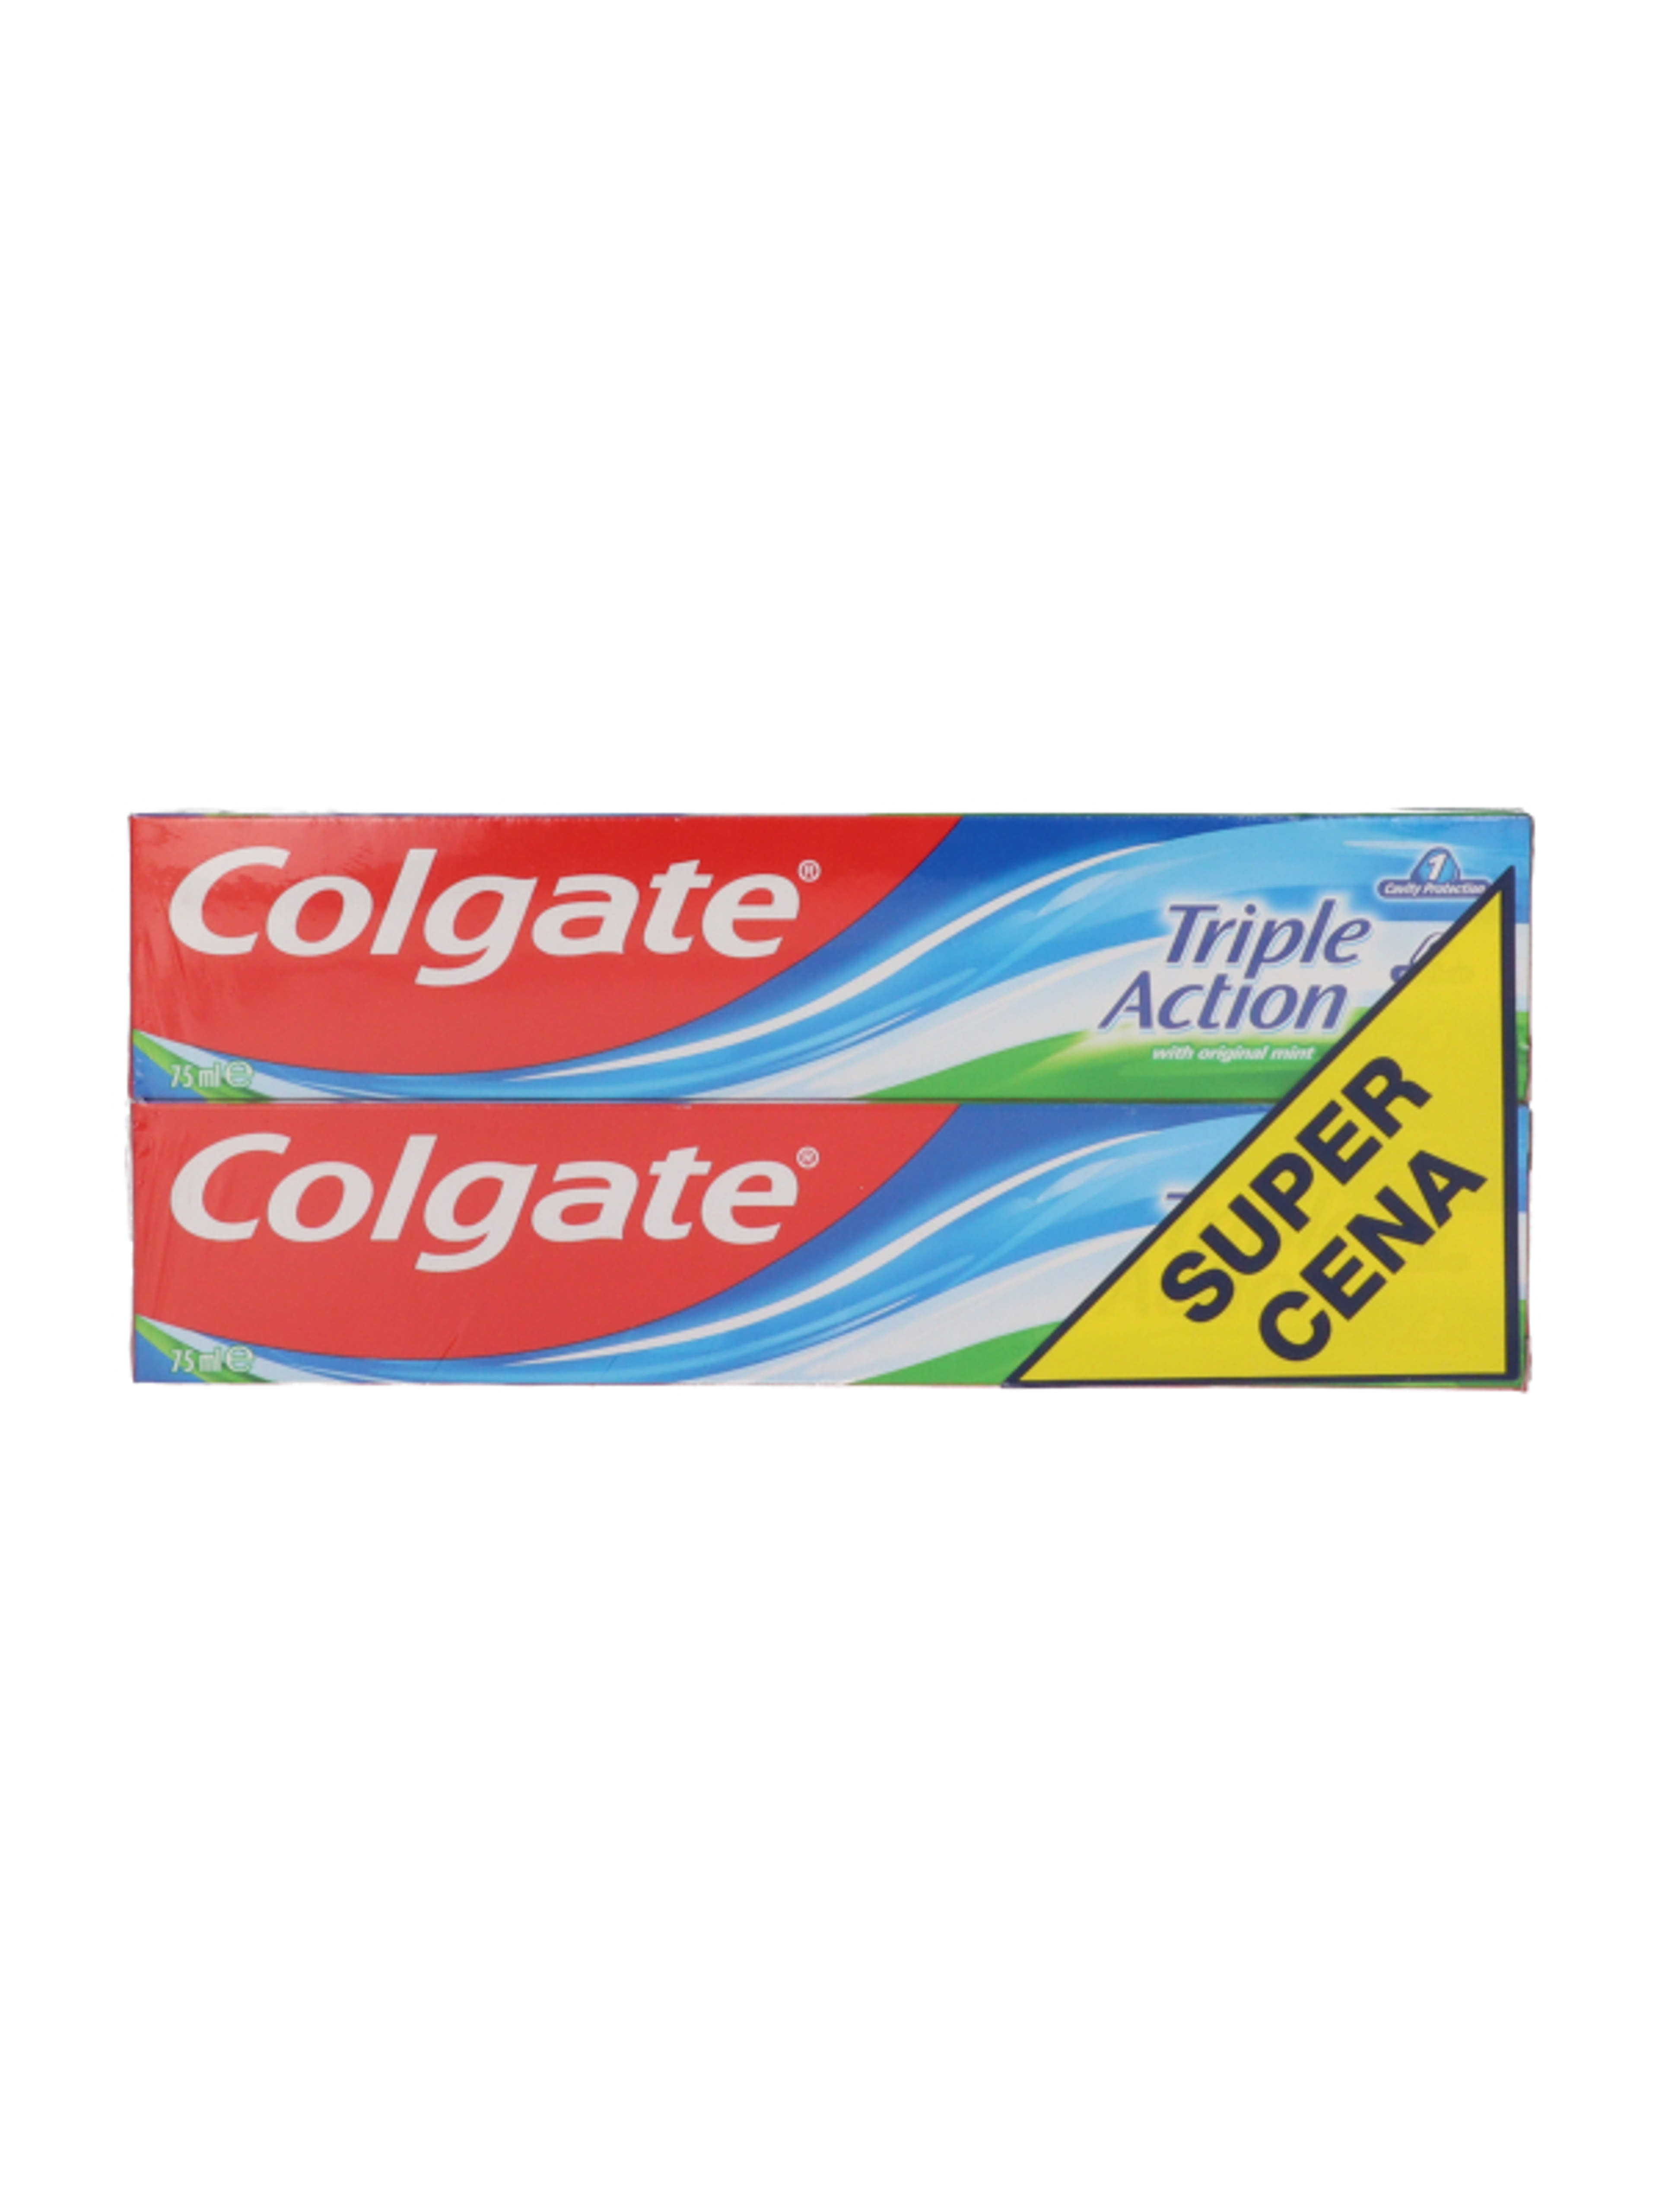 Colgate Triple Action fogkrém 2x75 ml - 150 ml